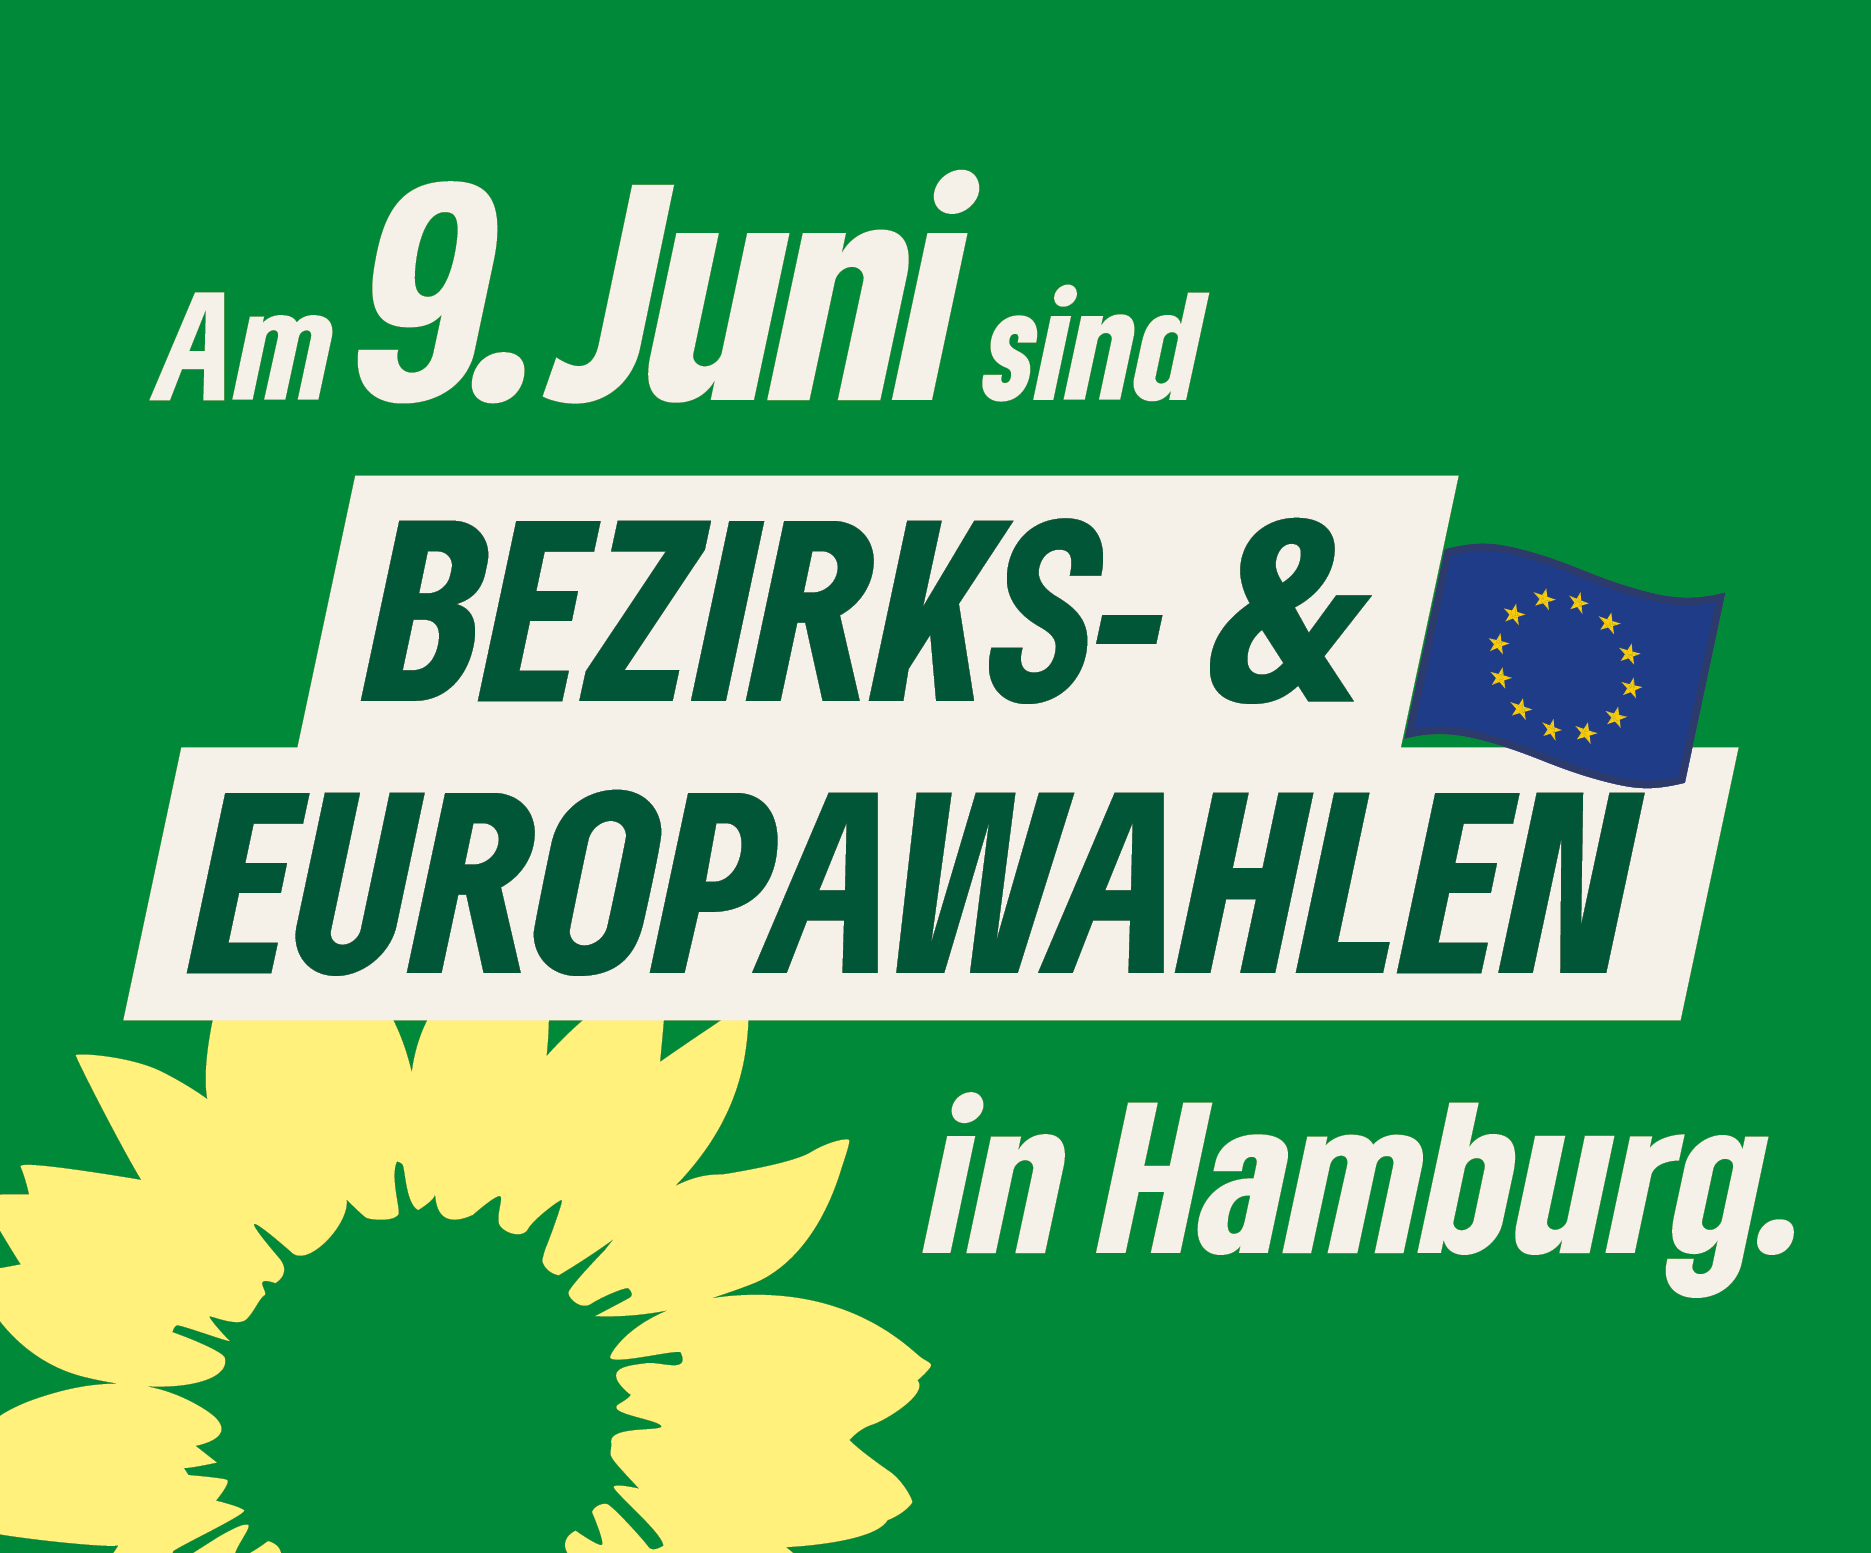 Am 9. Juni sind Bezirks- und Europawahlen in Hamburg